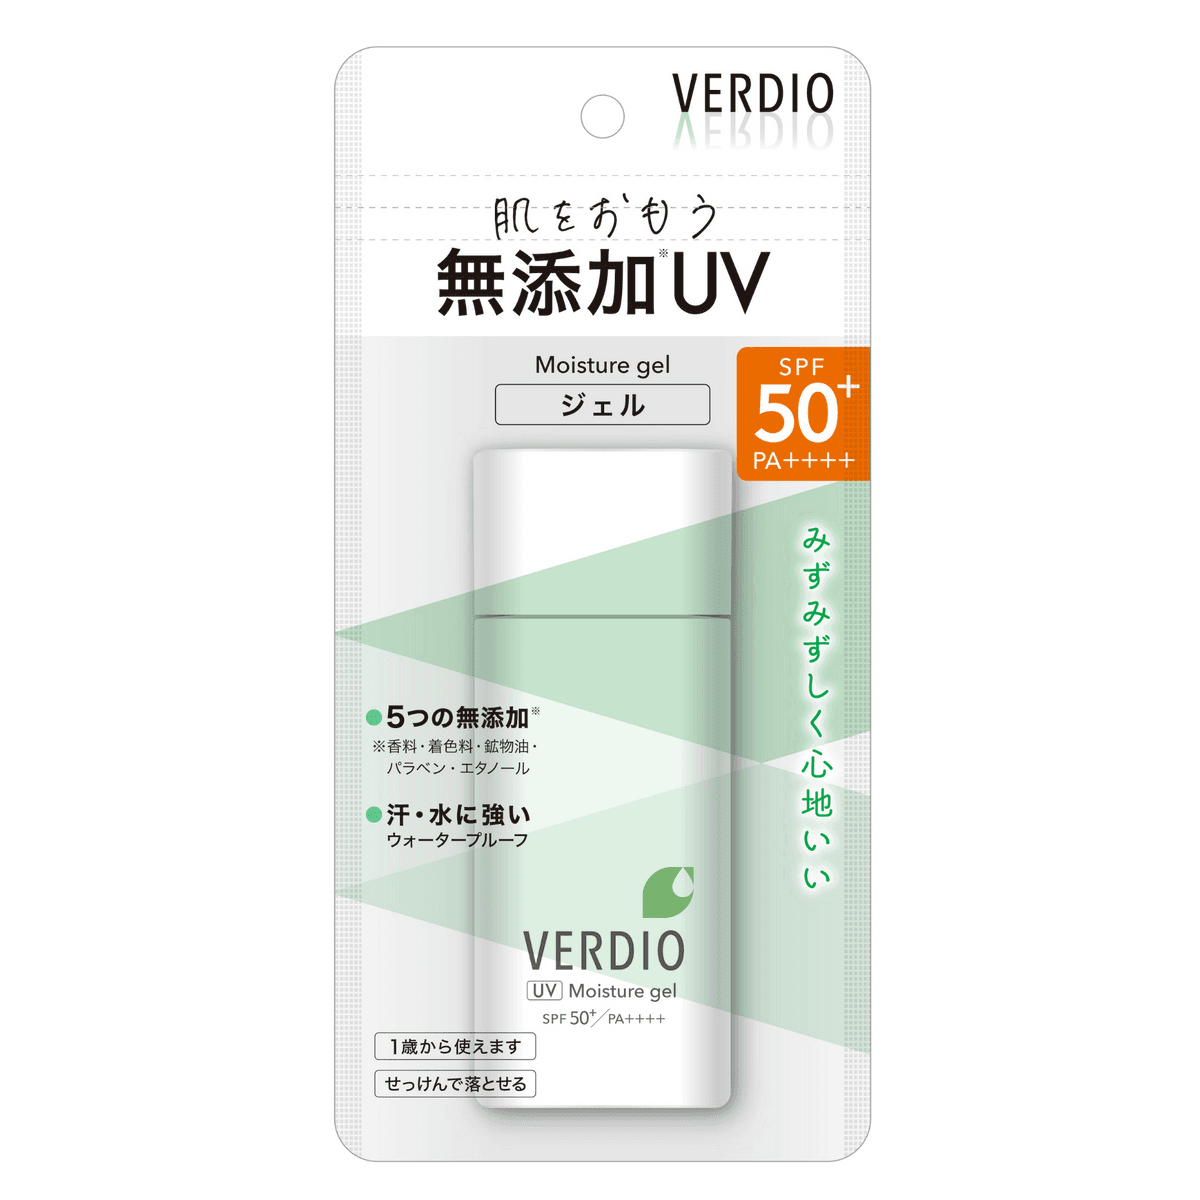 Verdio UV Moisture Gel SPF 50+ PA++++